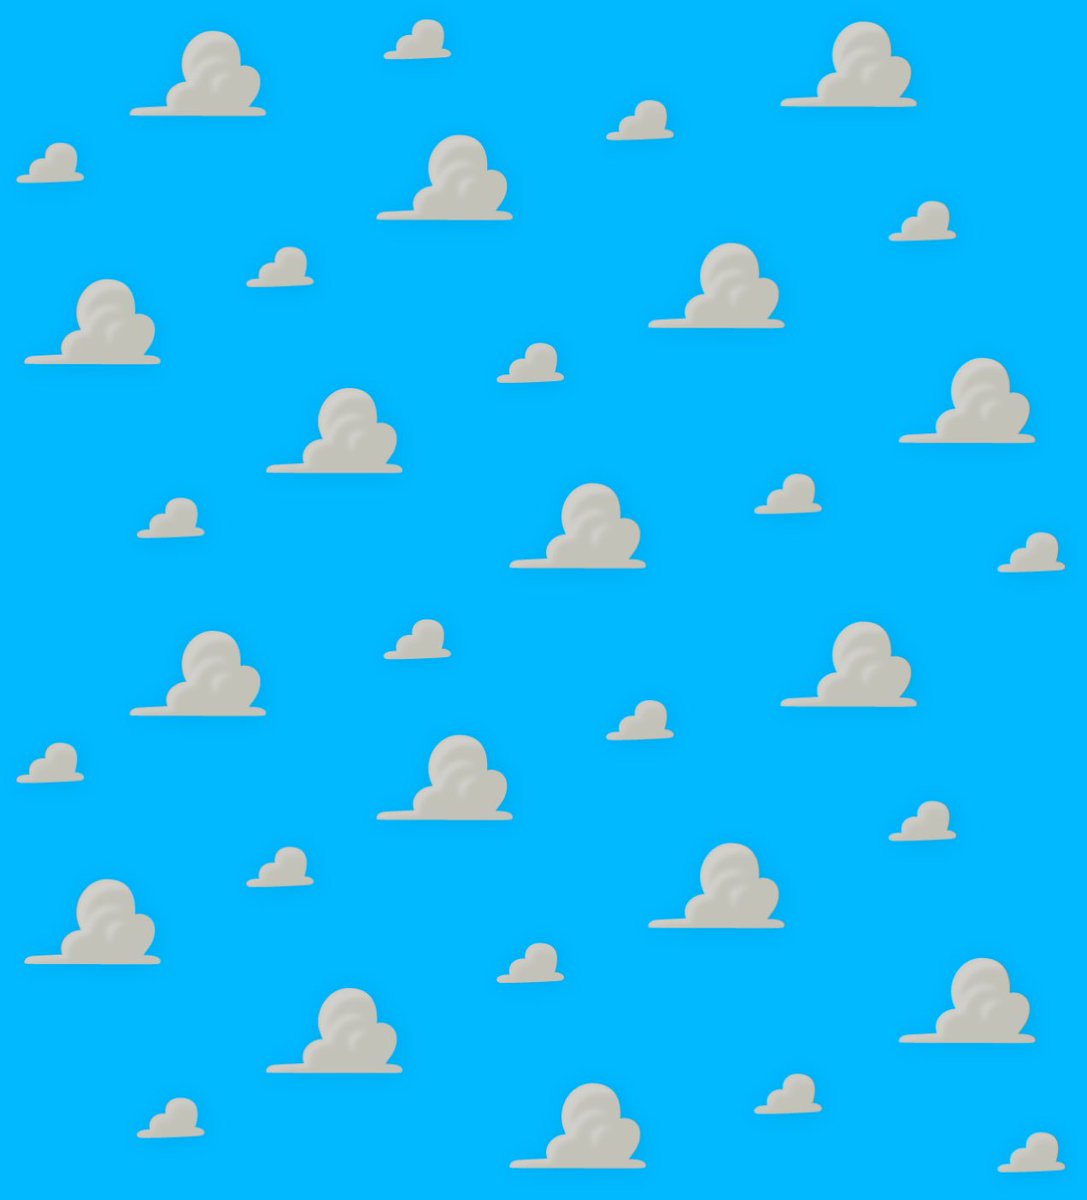 マシャパン Iphone Xのスマホケースでトイストーリーの雲柄あったのでゲットだぜ 元から待ち受けは雲柄なのでピッタリ ピクサー Pixar トイストーリー Toystory 雲柄 T Co Utzqb5djra Twitter